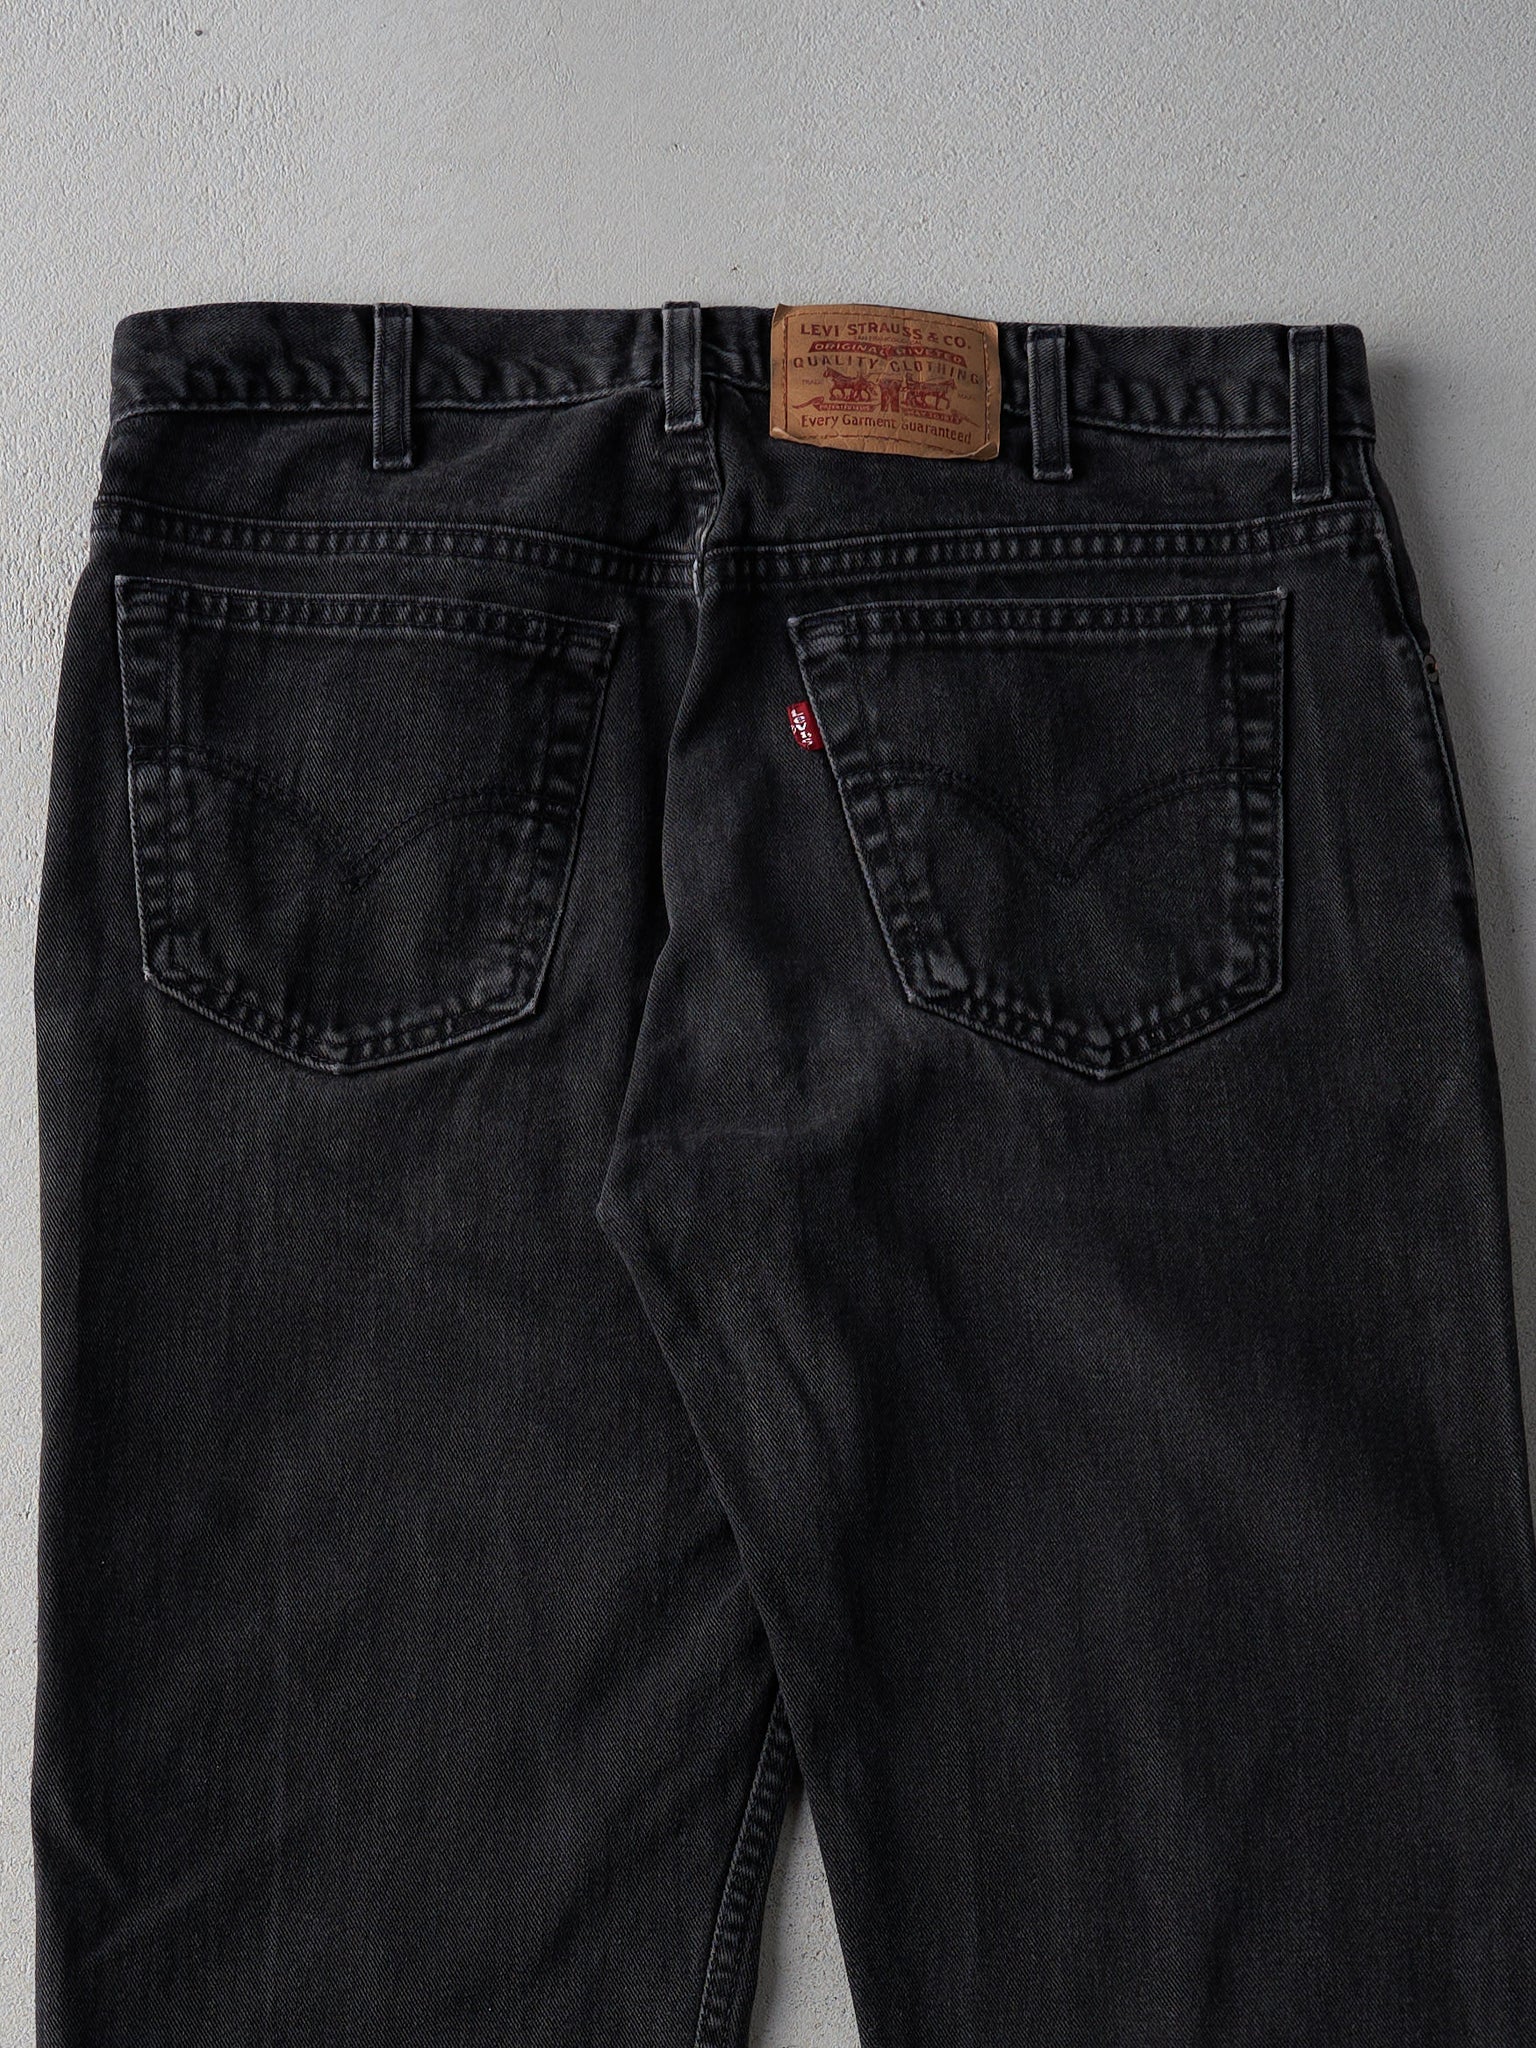 Vintage 90s Black Levi's 505 Pants (36x28)